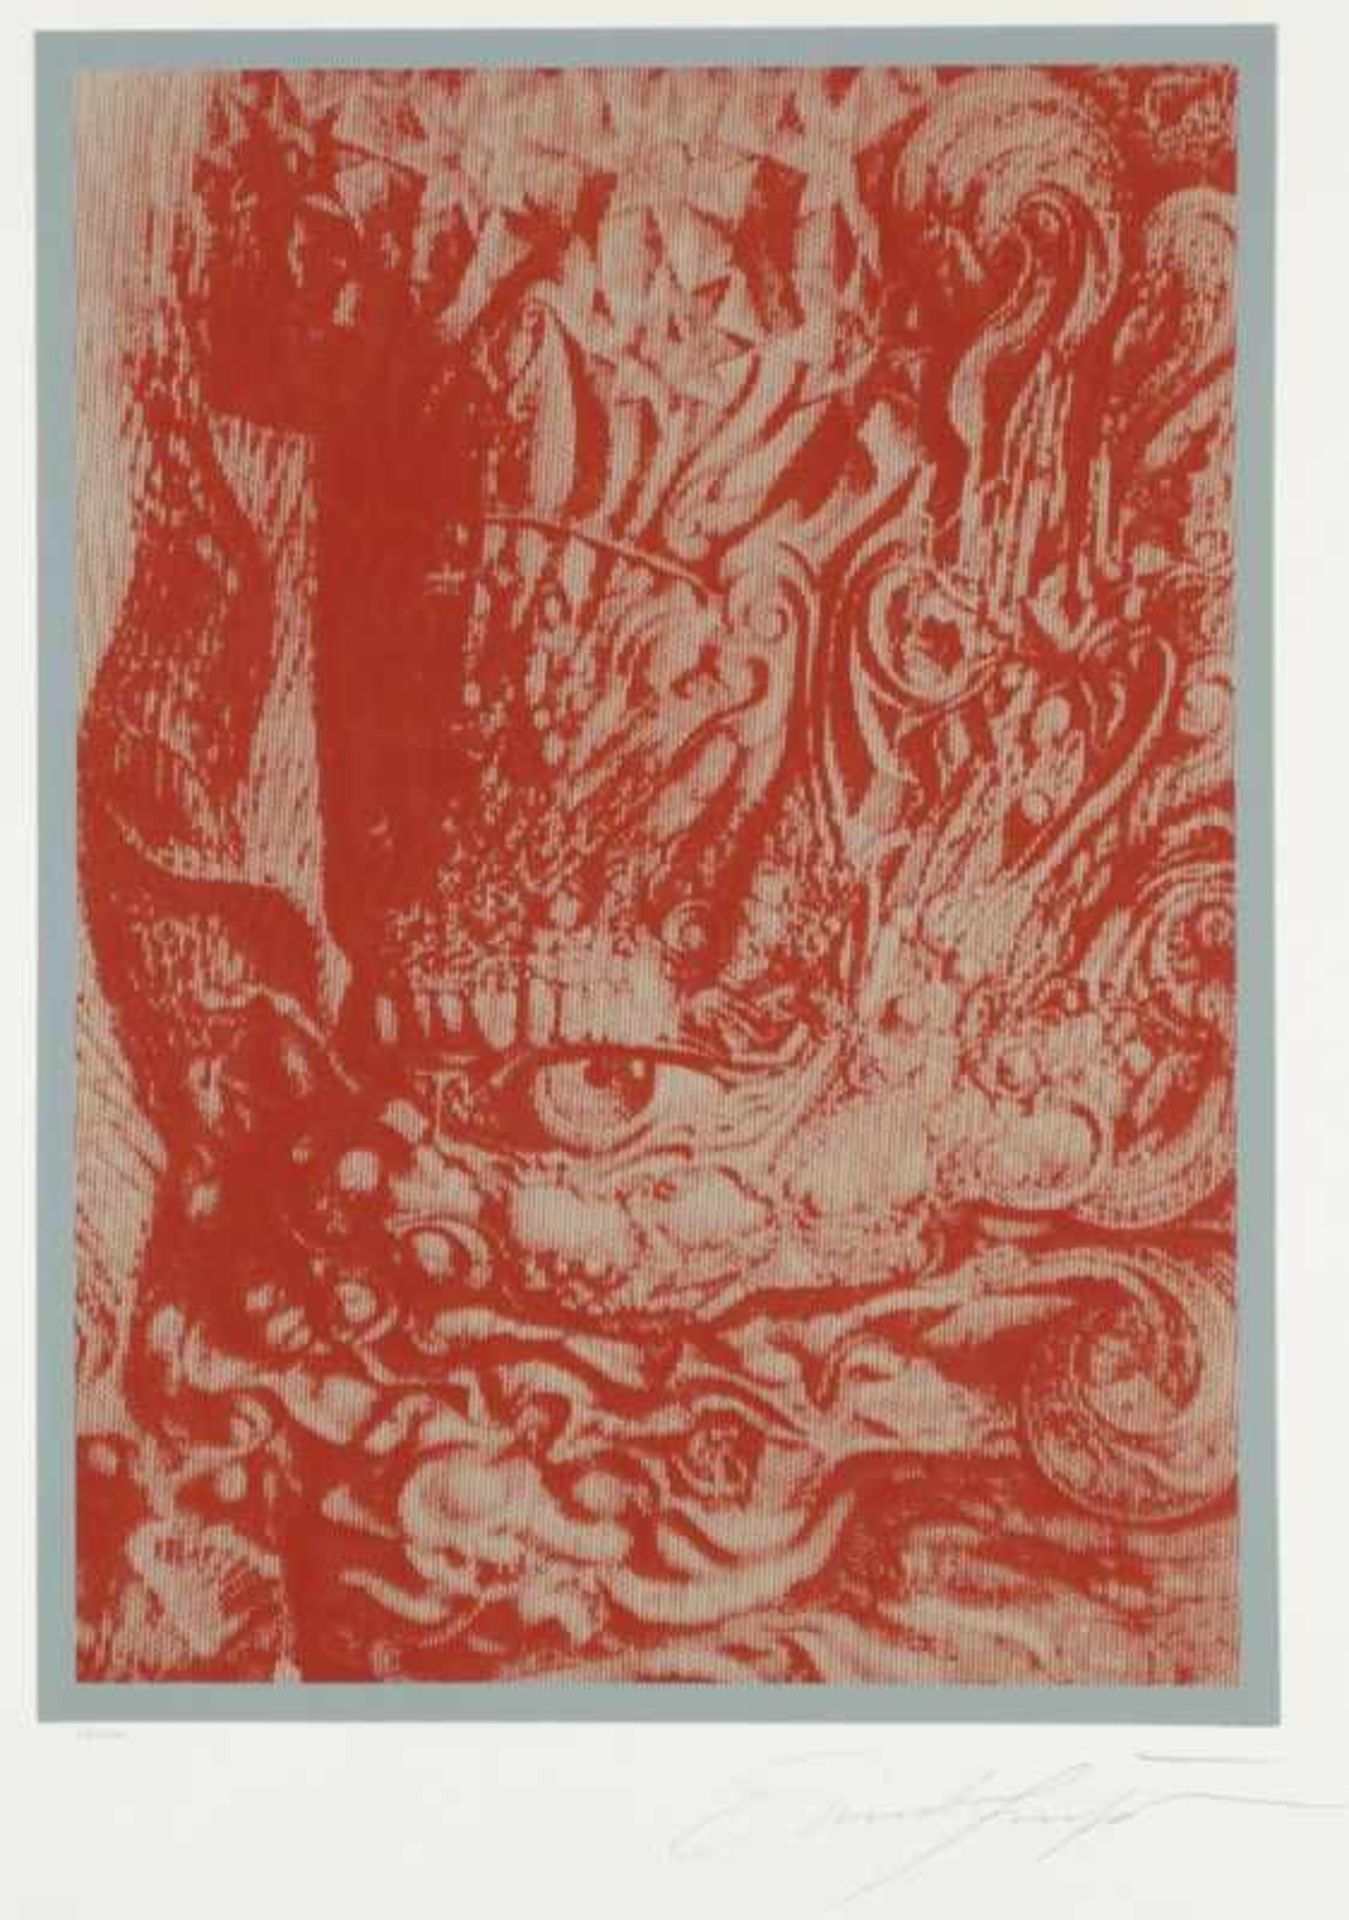 Ernst Fuchs1930 Wien - 2015 Wien - "Mordochai" - Farbsergrafie/Papier. 64/200. 52 x 38,2 cm, 64,8